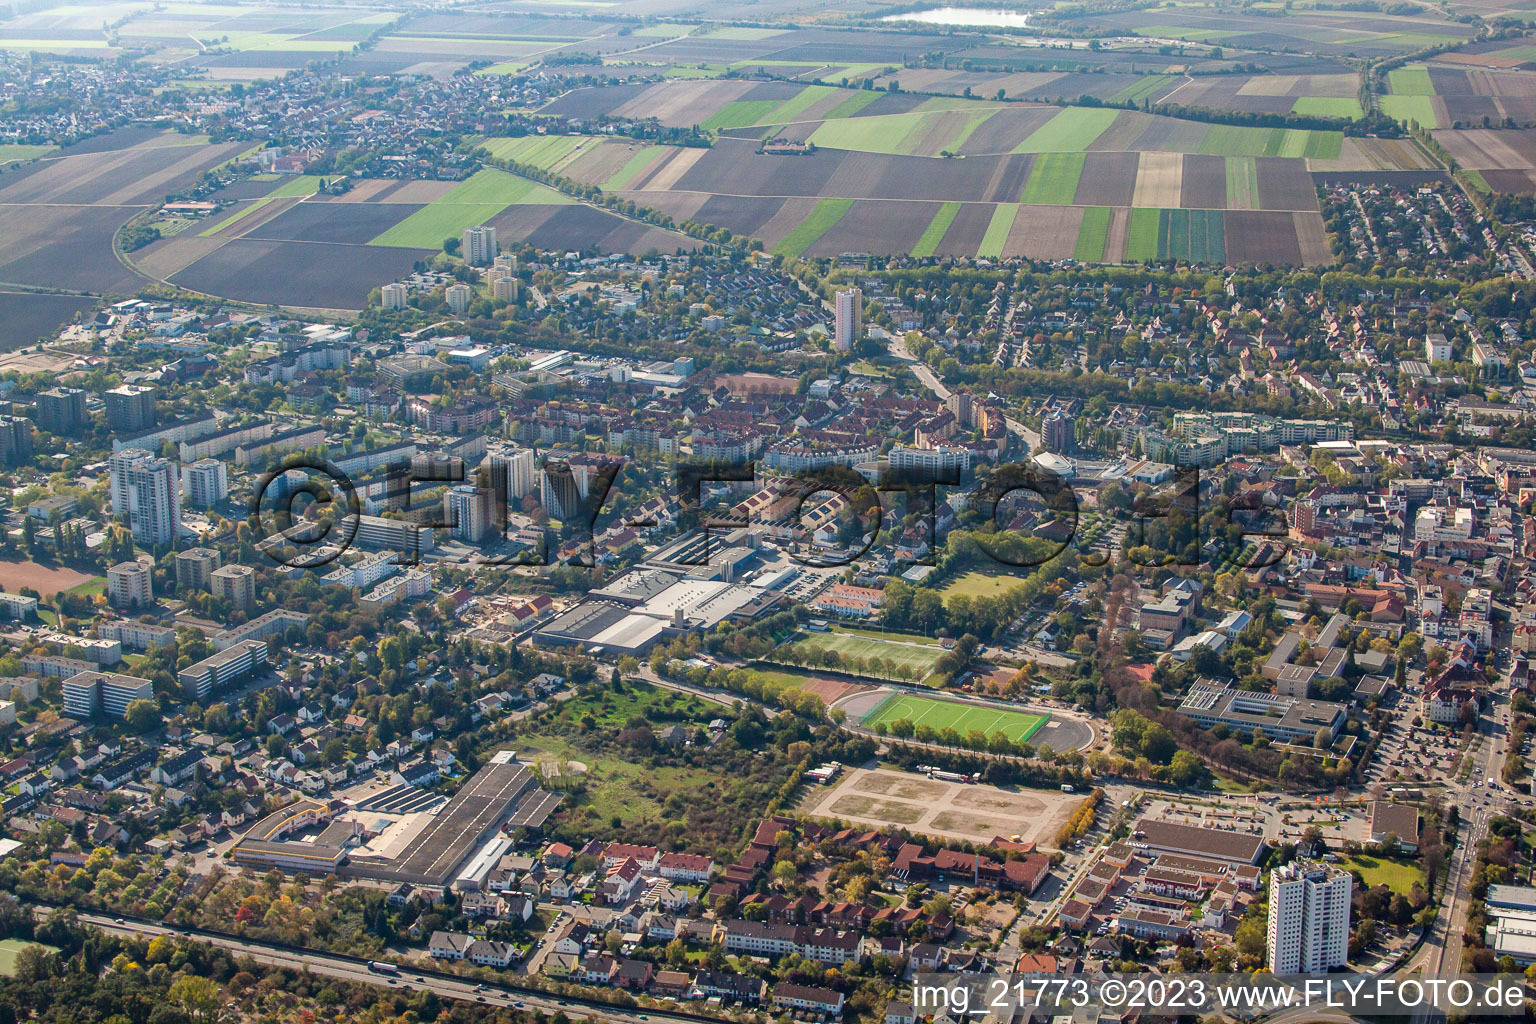 Frankenthal im Bundesland Rheinland-Pfalz, Deutschland aus der Luft betrachtet